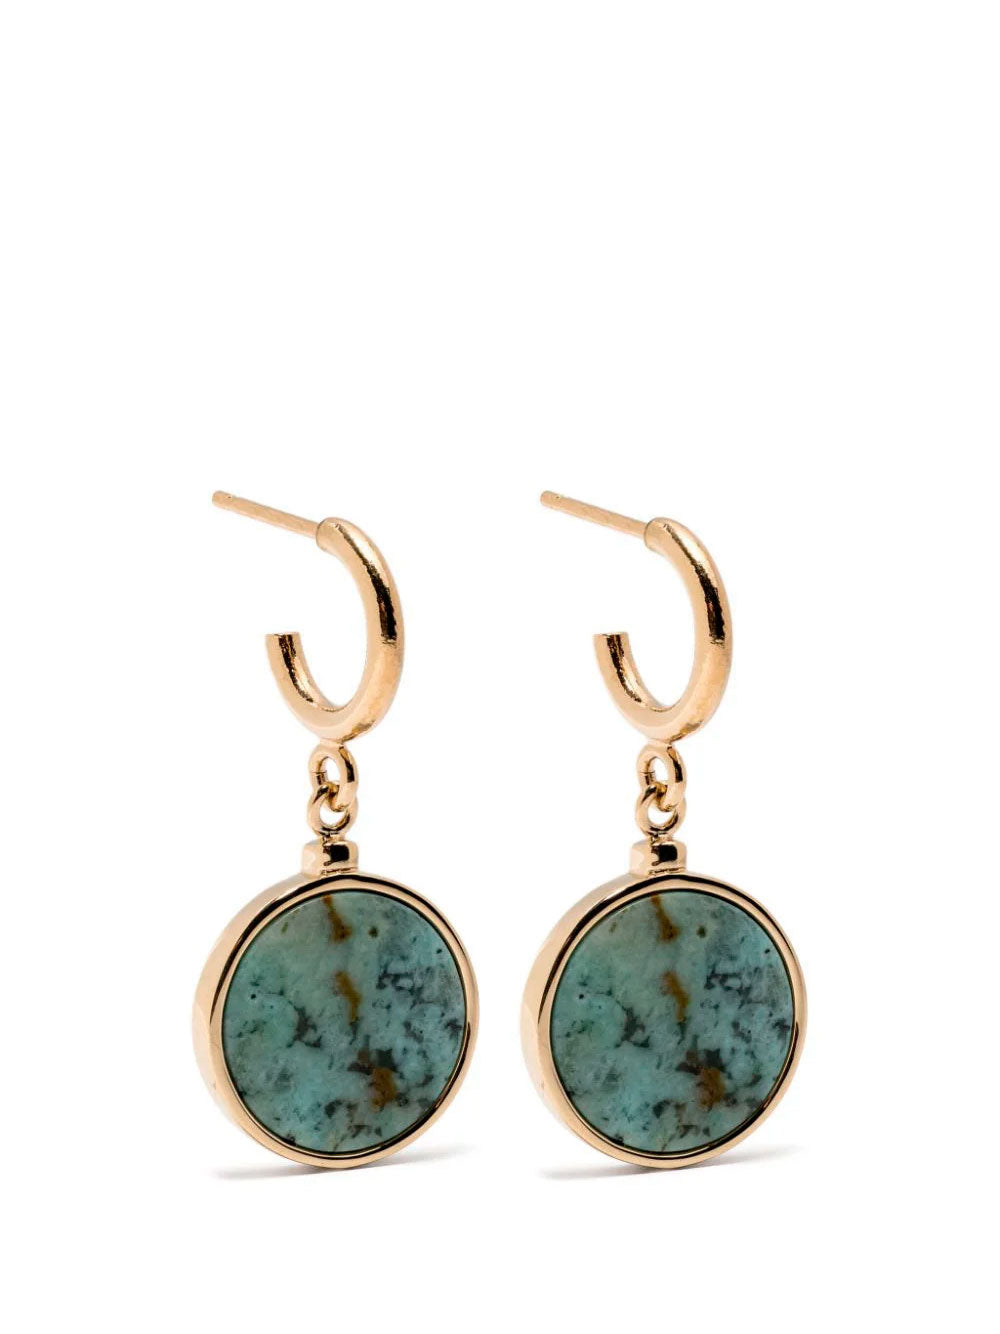 Casablaca earrings